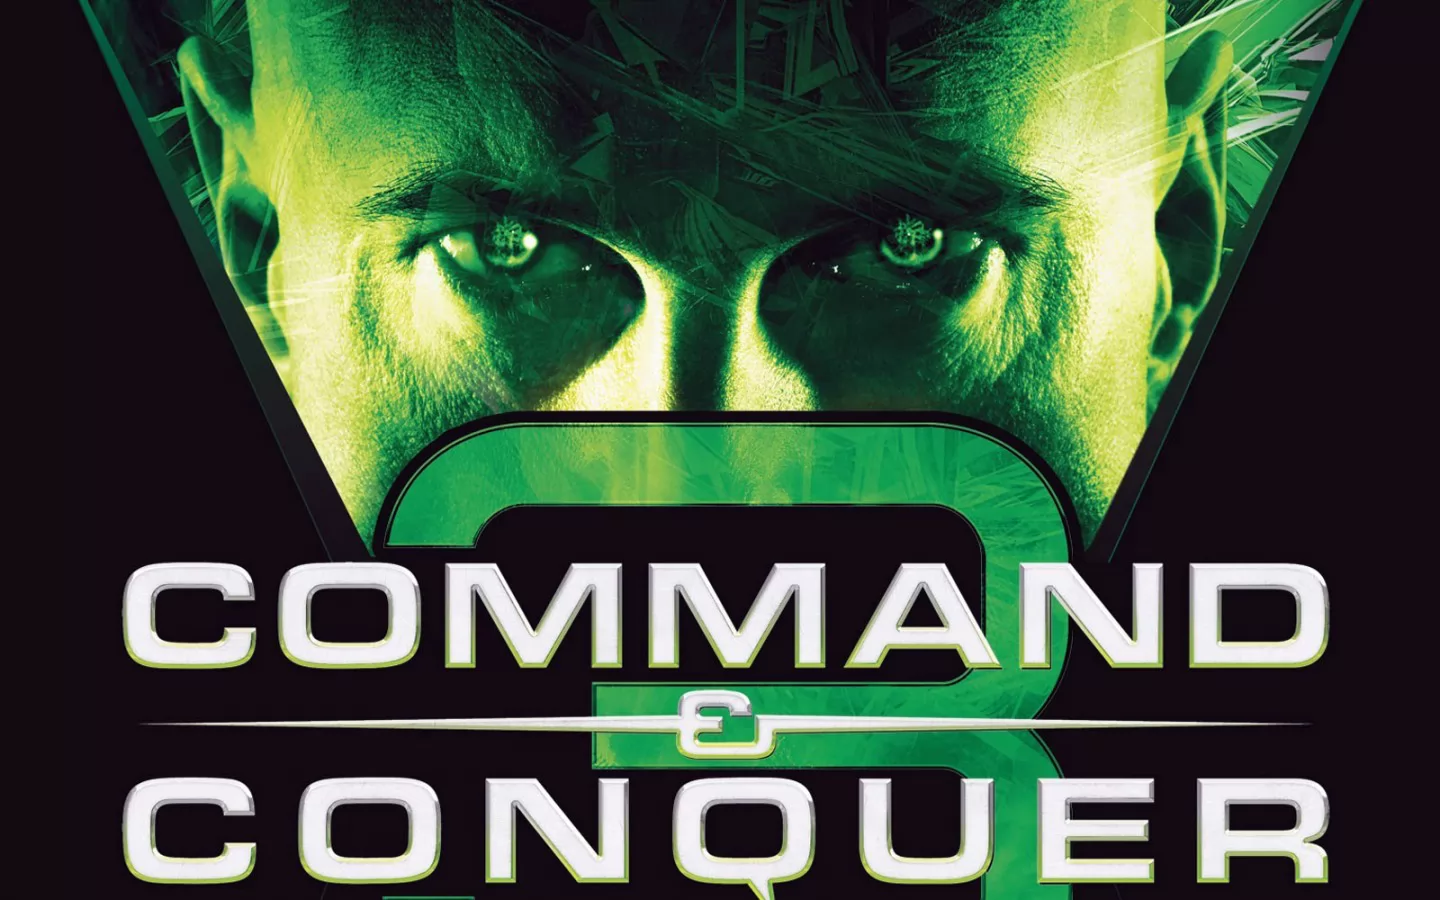 Command & Conquer 3: Tiberium Wars,   